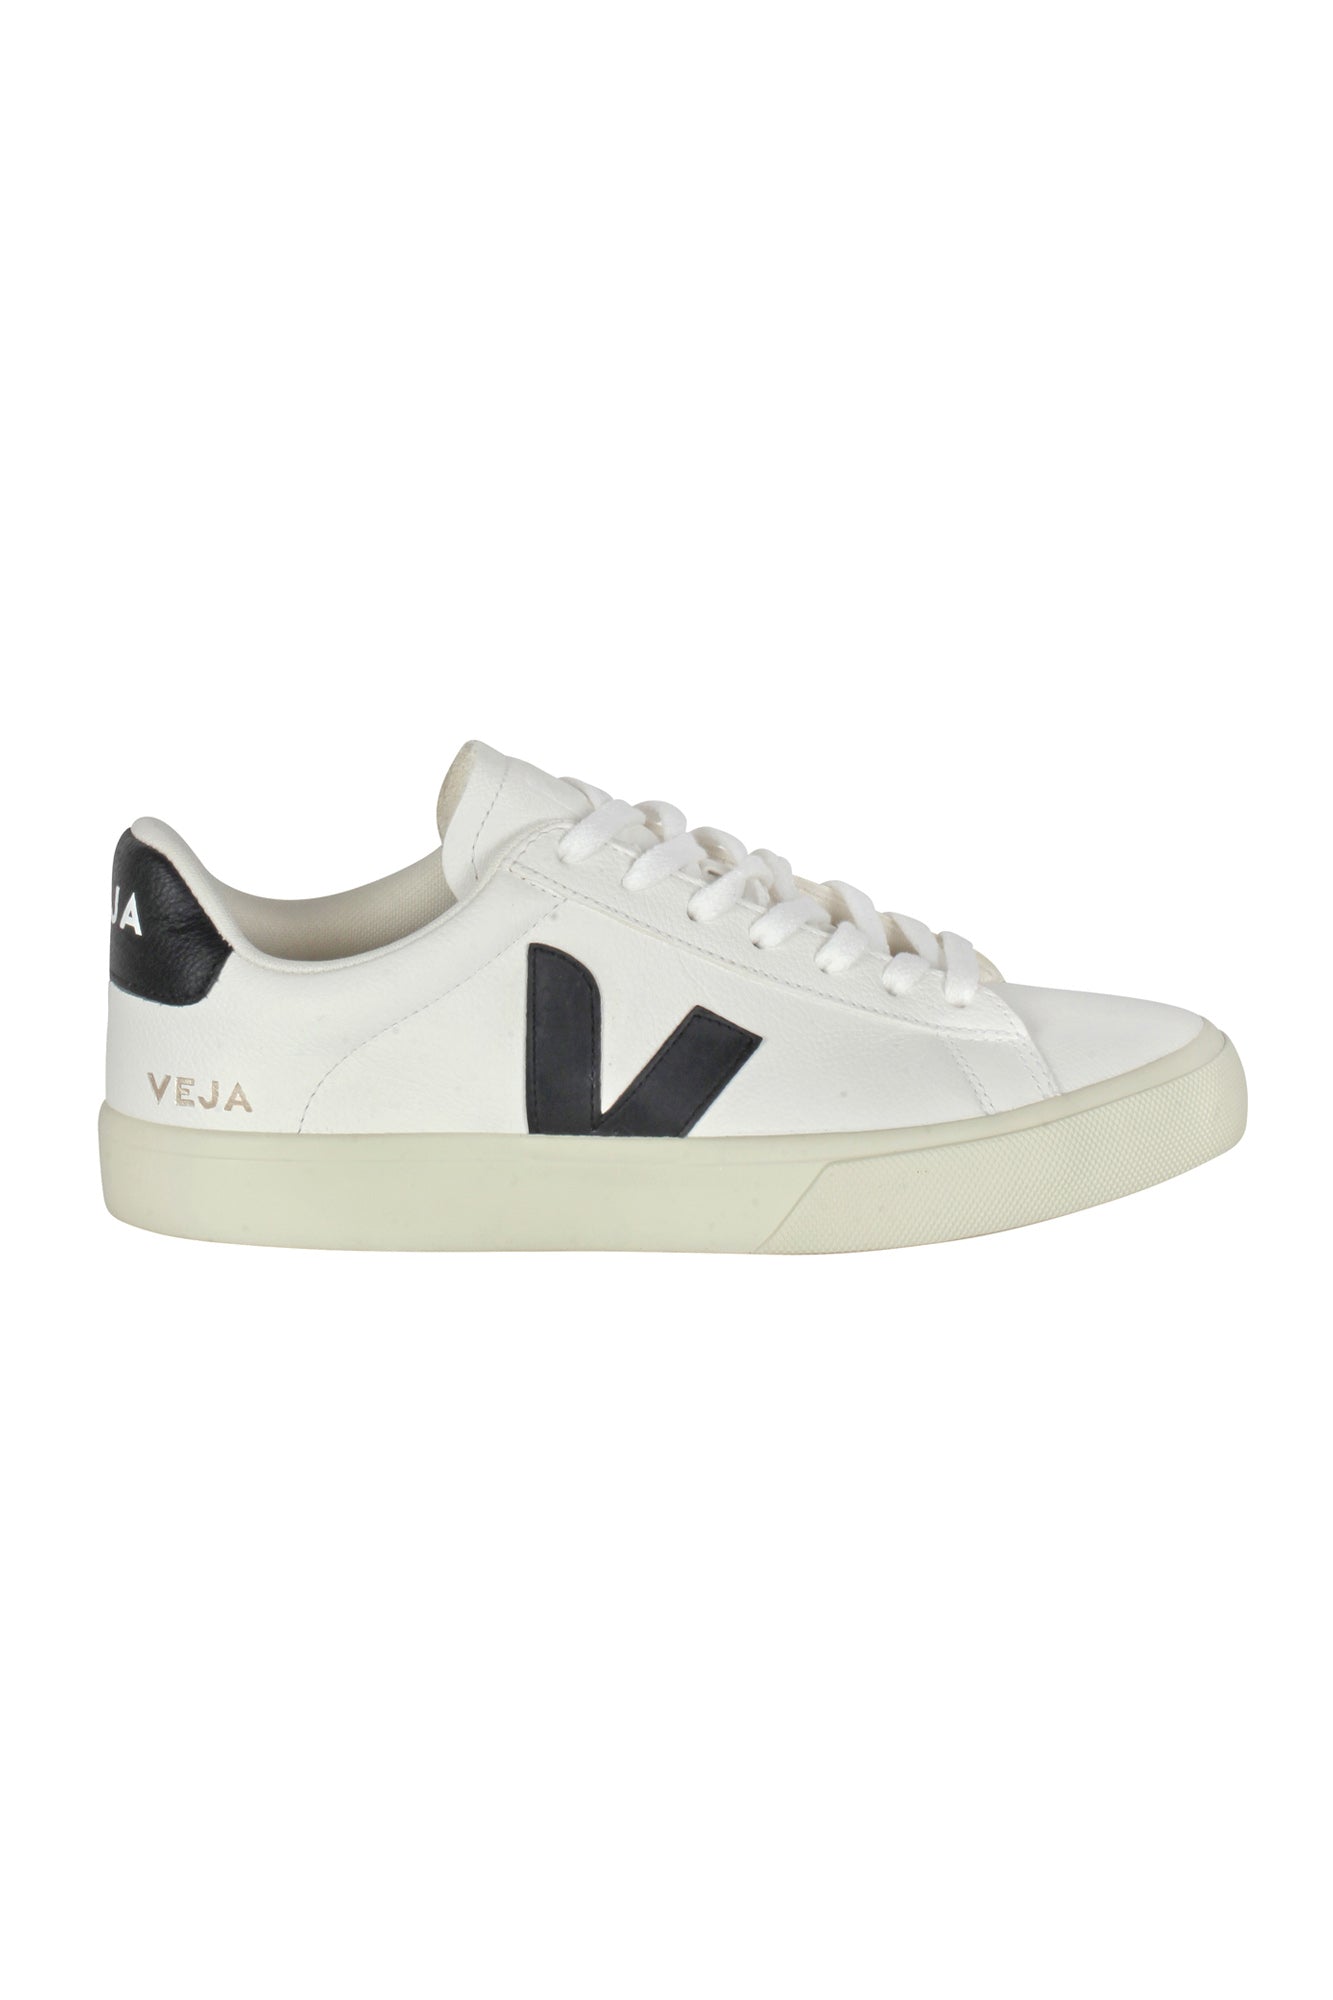 Veja - Sneakers - 430598 - Bianco/Nero